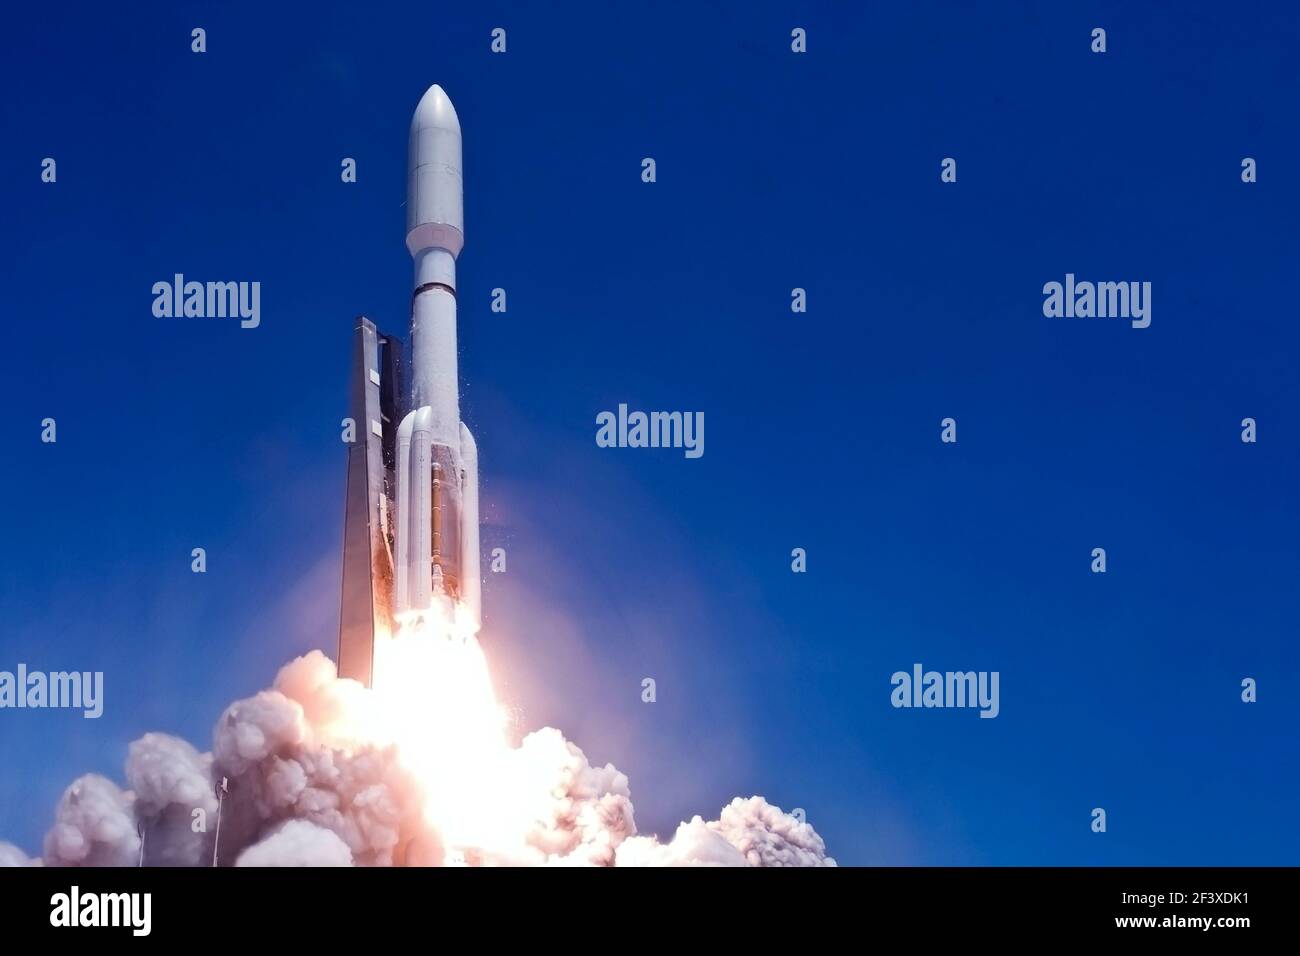 Raketenstart in den freien Raum. Elemente dieses Bildes wurden von der NASA eingerichtet. Hochwertige Fotos Stockfoto